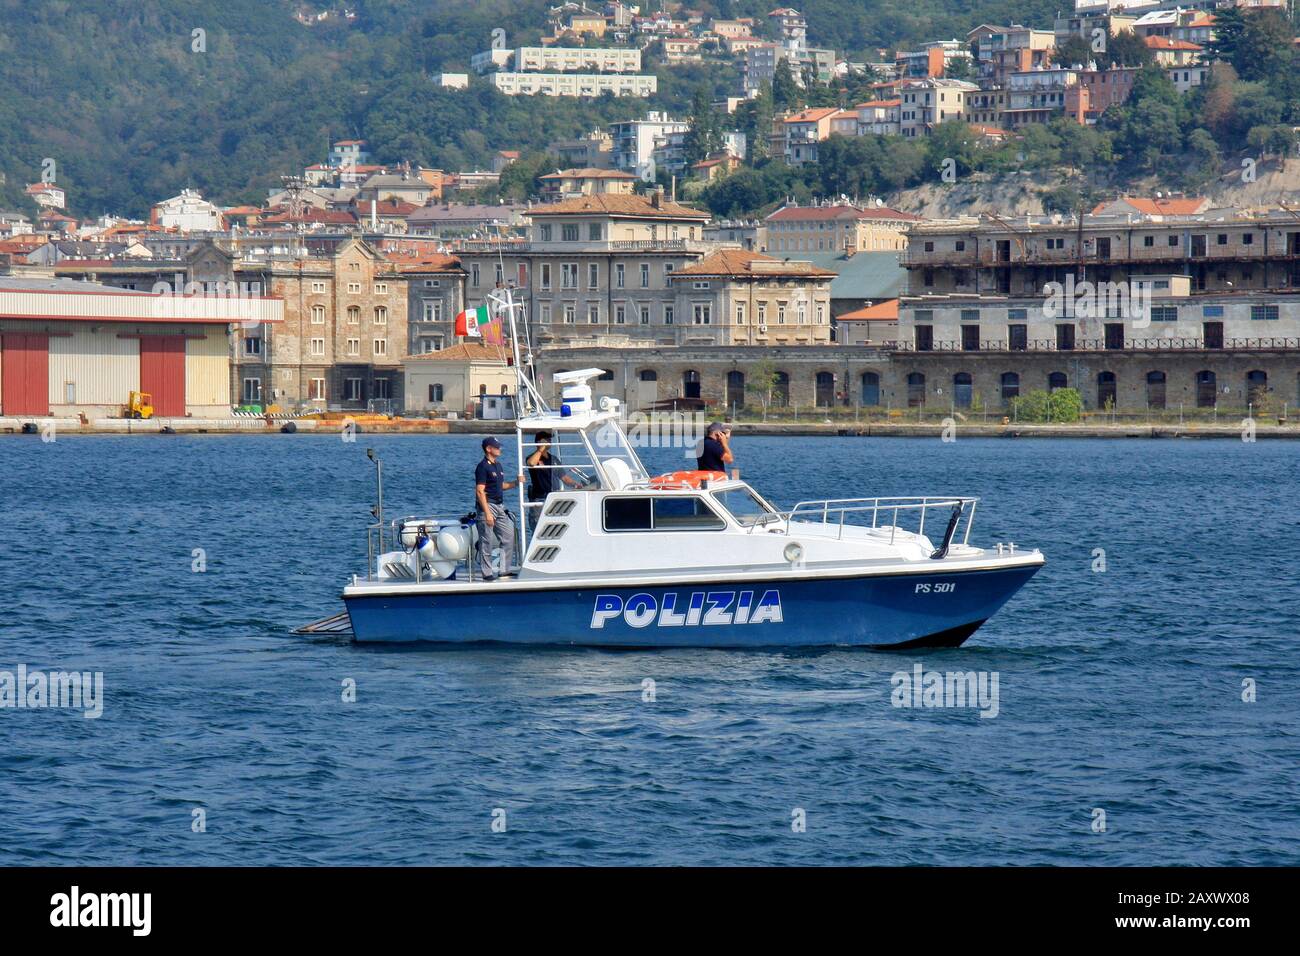 Trieste, Italia - 27 settembre 2009: Pattuglia di polizia italiana con tre uomini a bordo, pattugliano le coste della zona portuale. Foto Stock